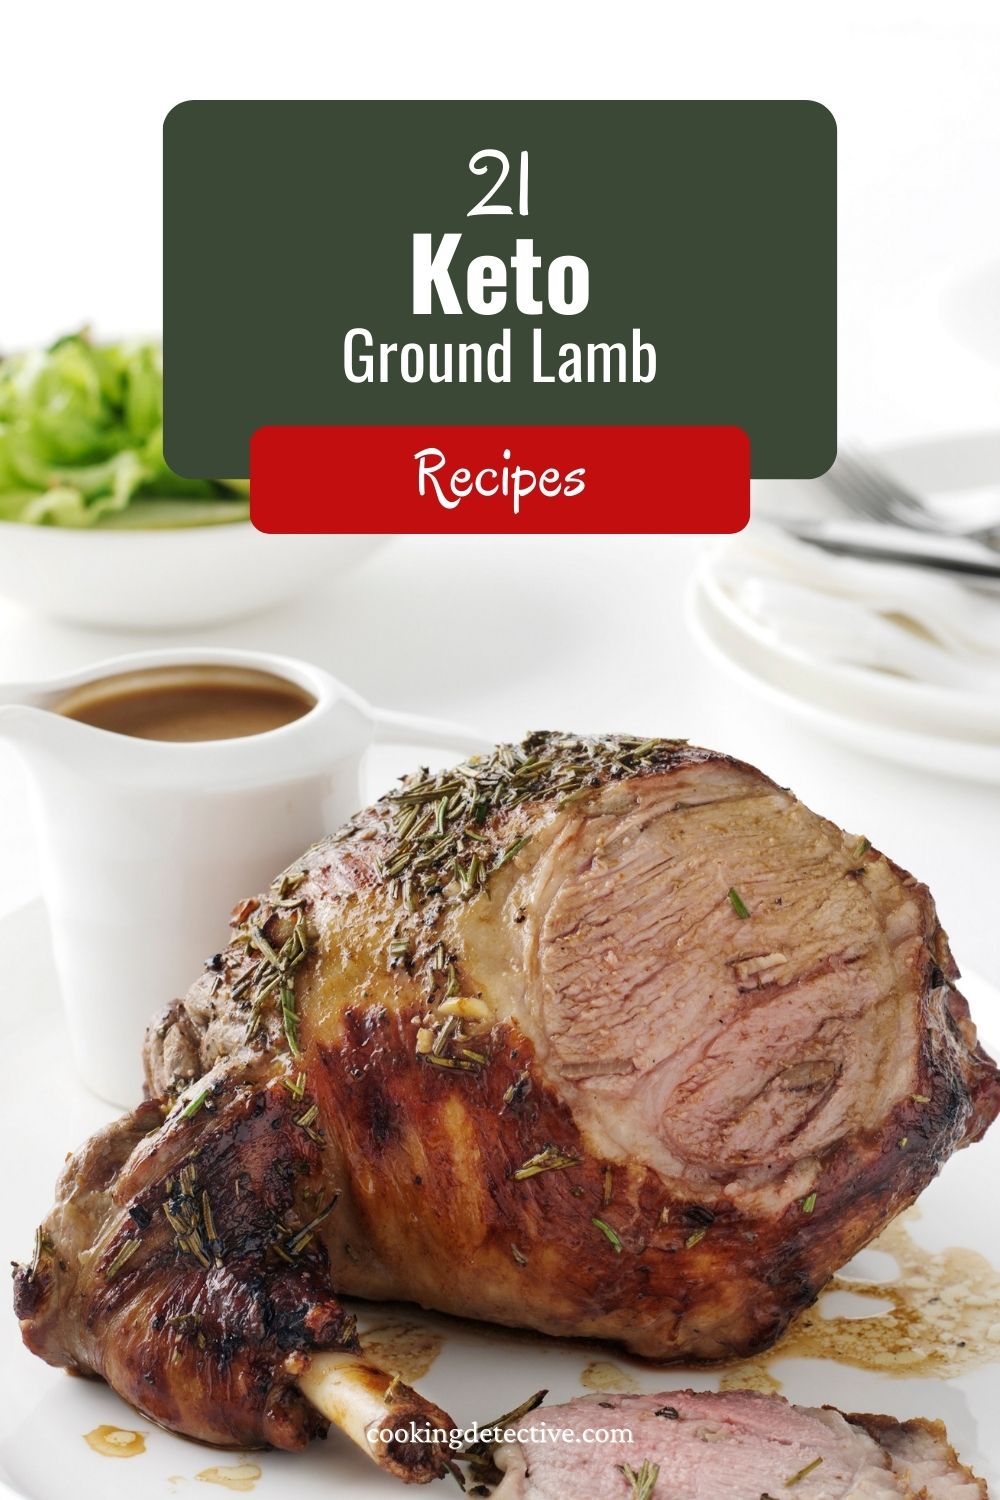 Keto Ground Lamb Recipes